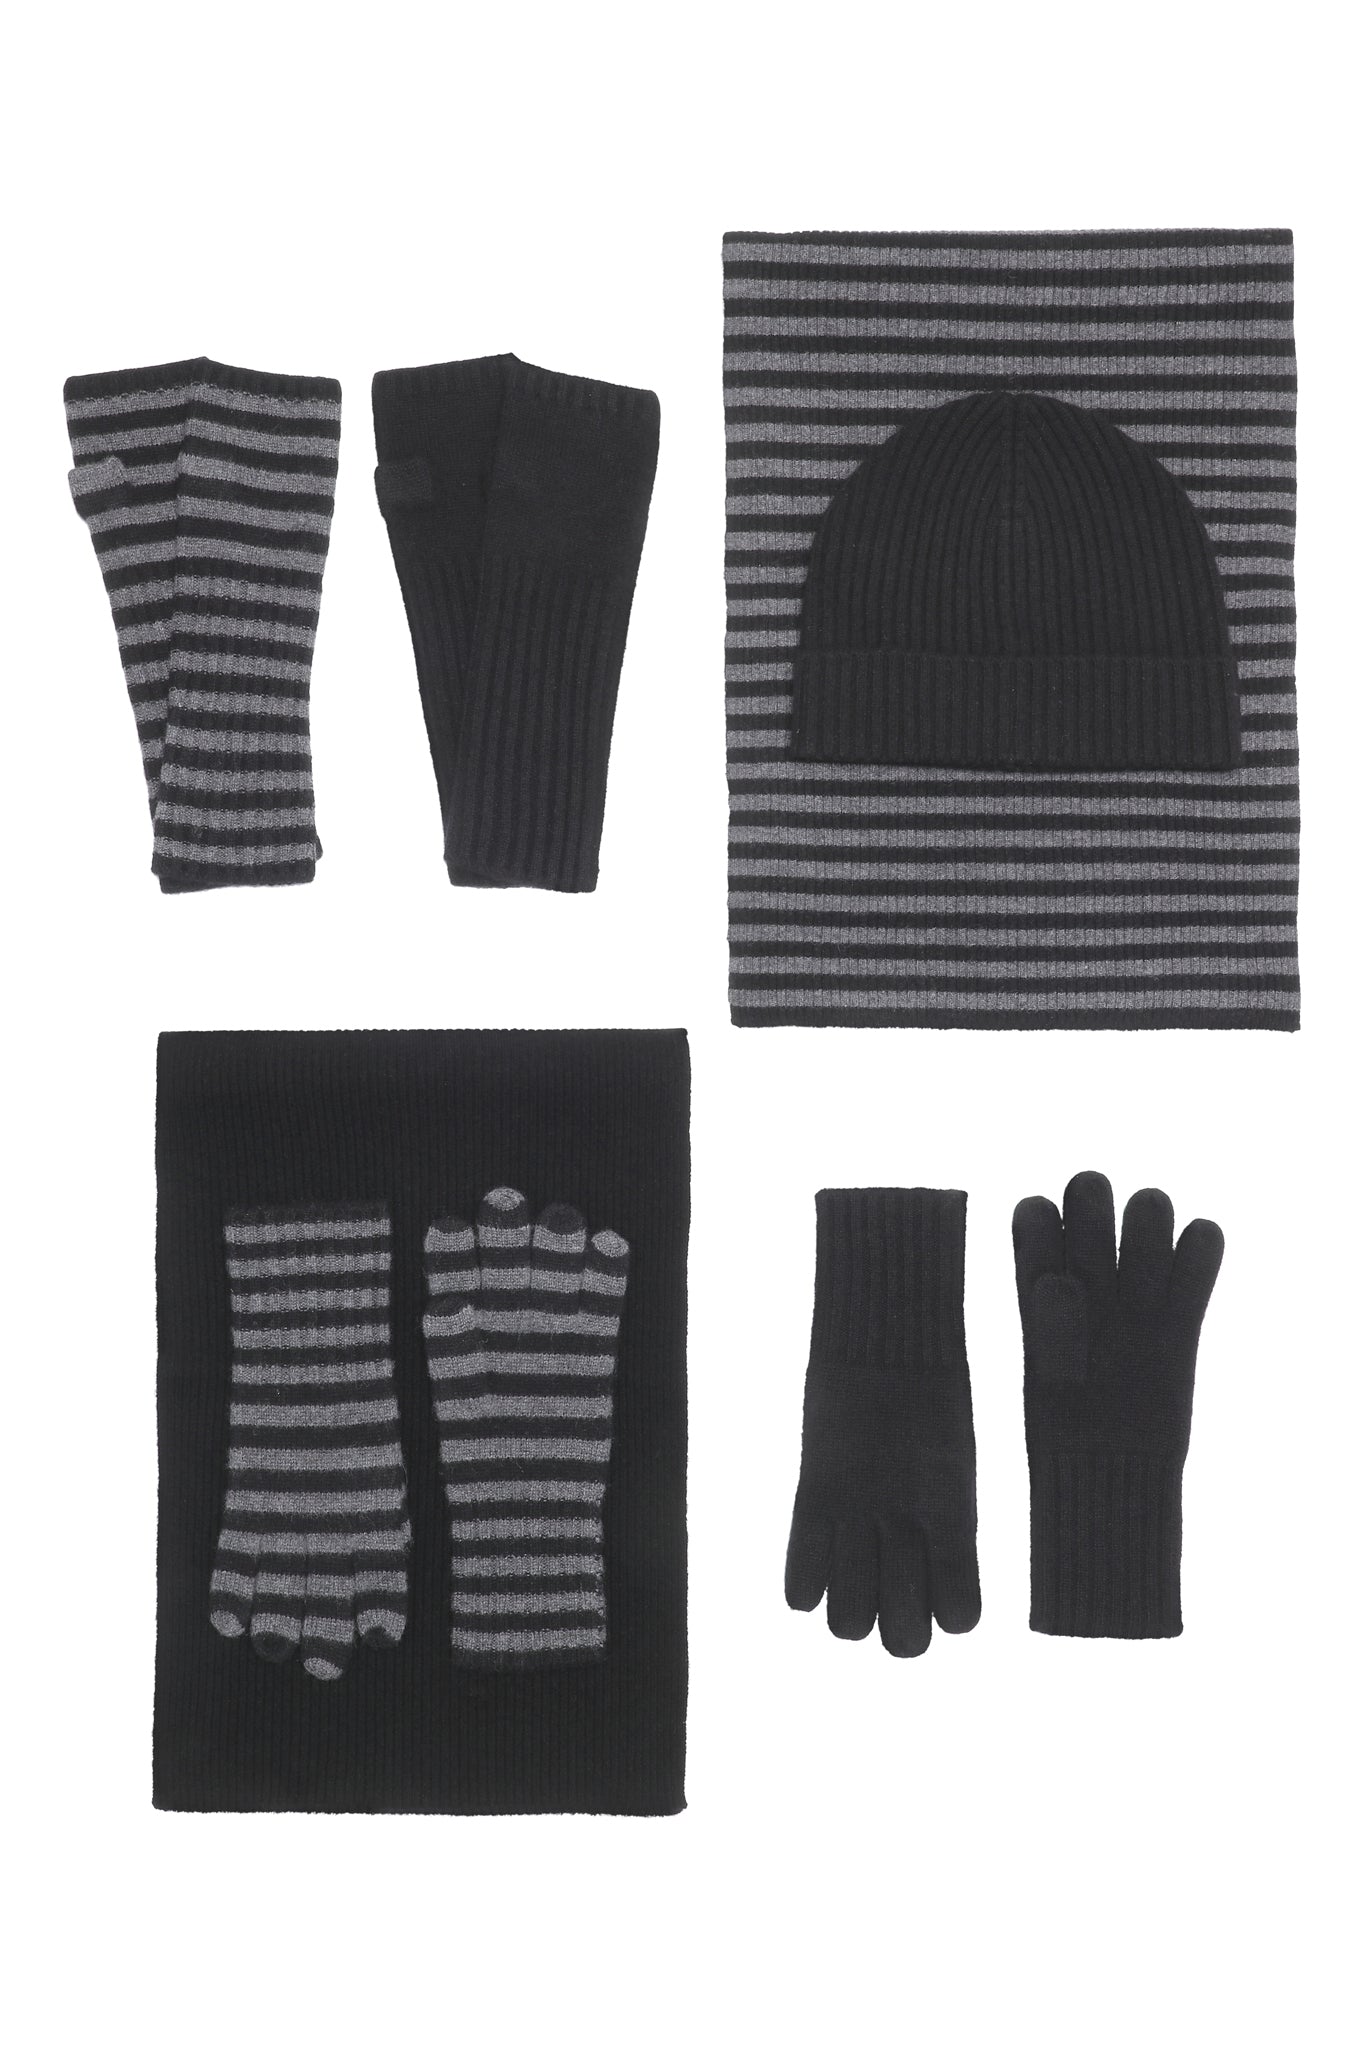 Robin - Tørklæde med striber i strikket cashmere - Sort og Mørkegrå